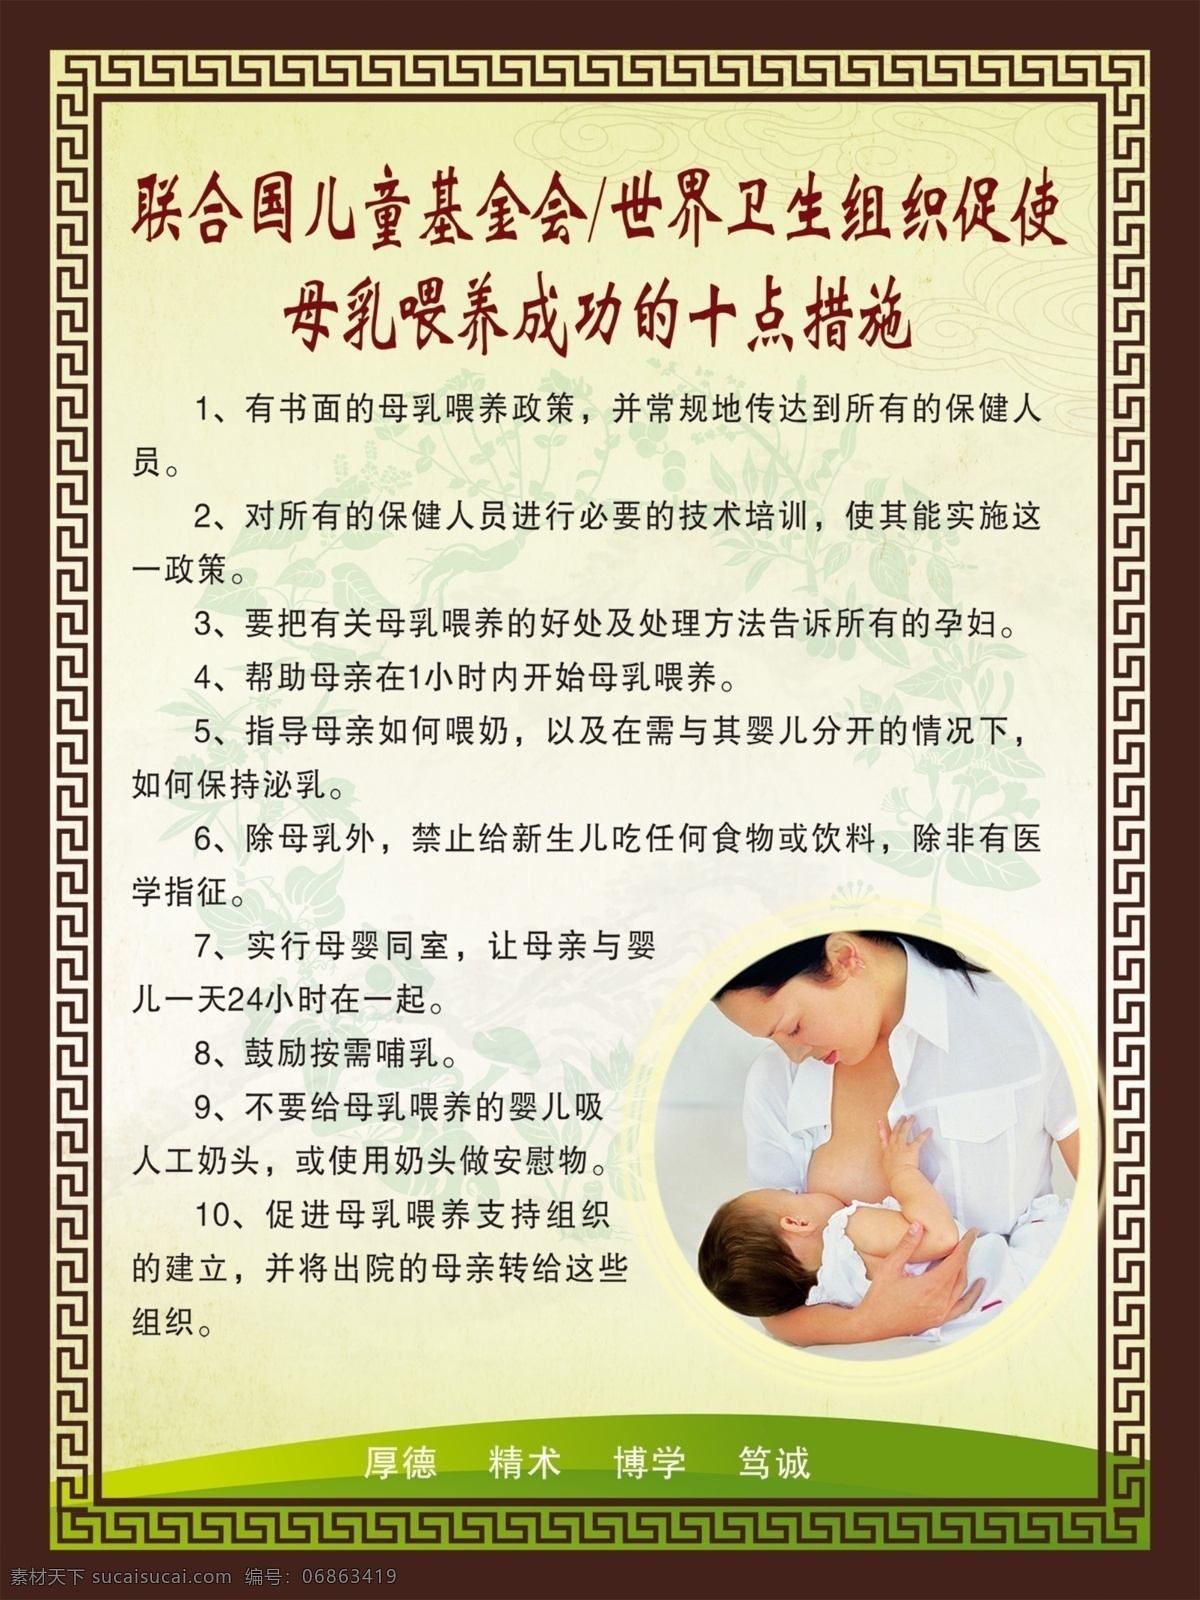 母乳 喂养 十 点 措施 母乳喂养 喂养十点措施 母婴 十点措施 母乳海报 分层